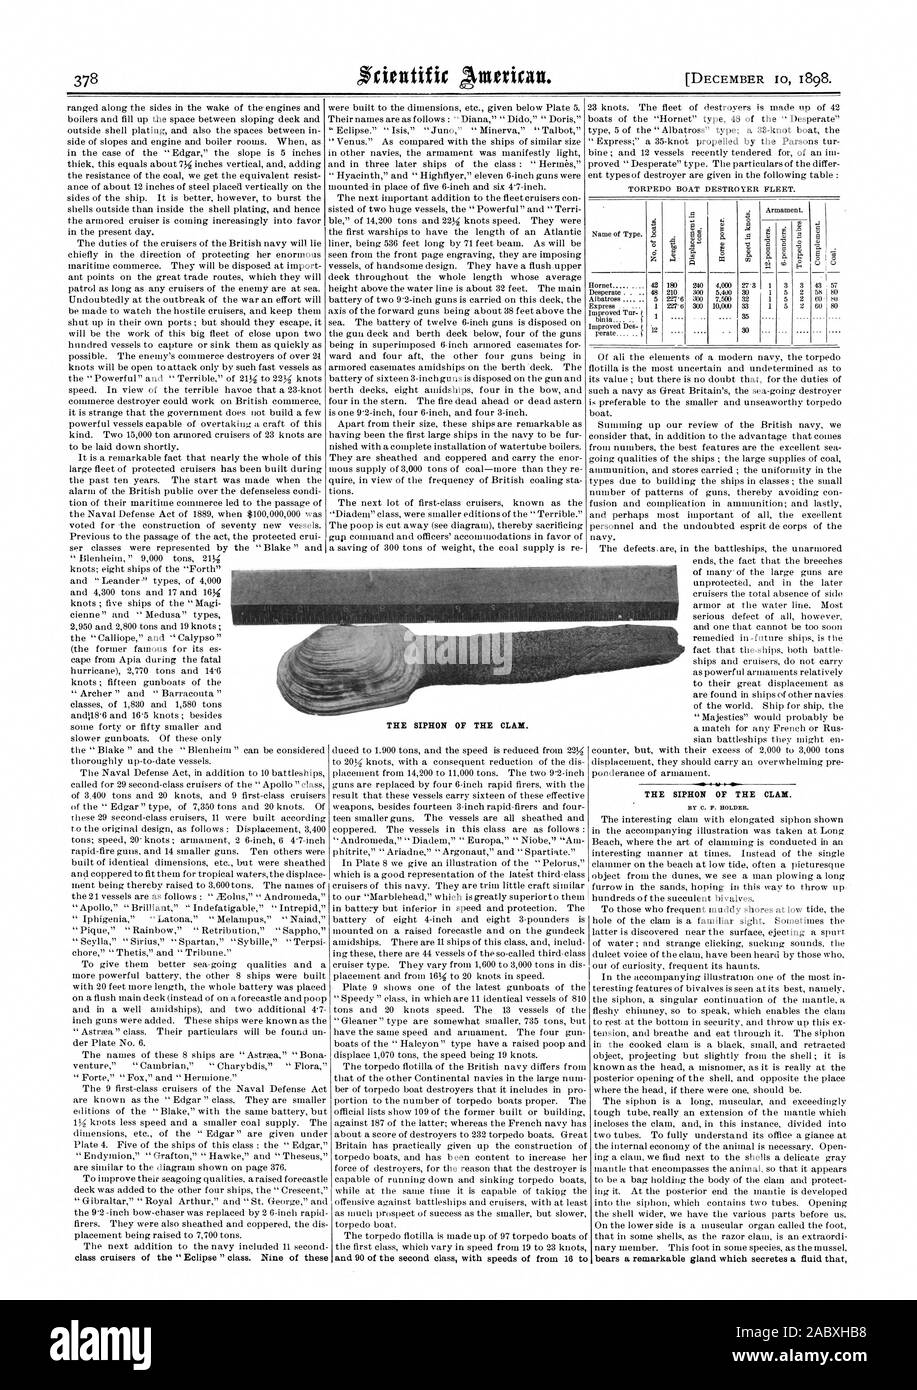 Der SIPHON DER CLAM. Von C.F. HALTER. trägt eine bemerkenswerte Drüse, die sondert eine Flüssigkeit, die den SIPHON DER CLAM., Scientific American, 1898-12-10 Stockfoto